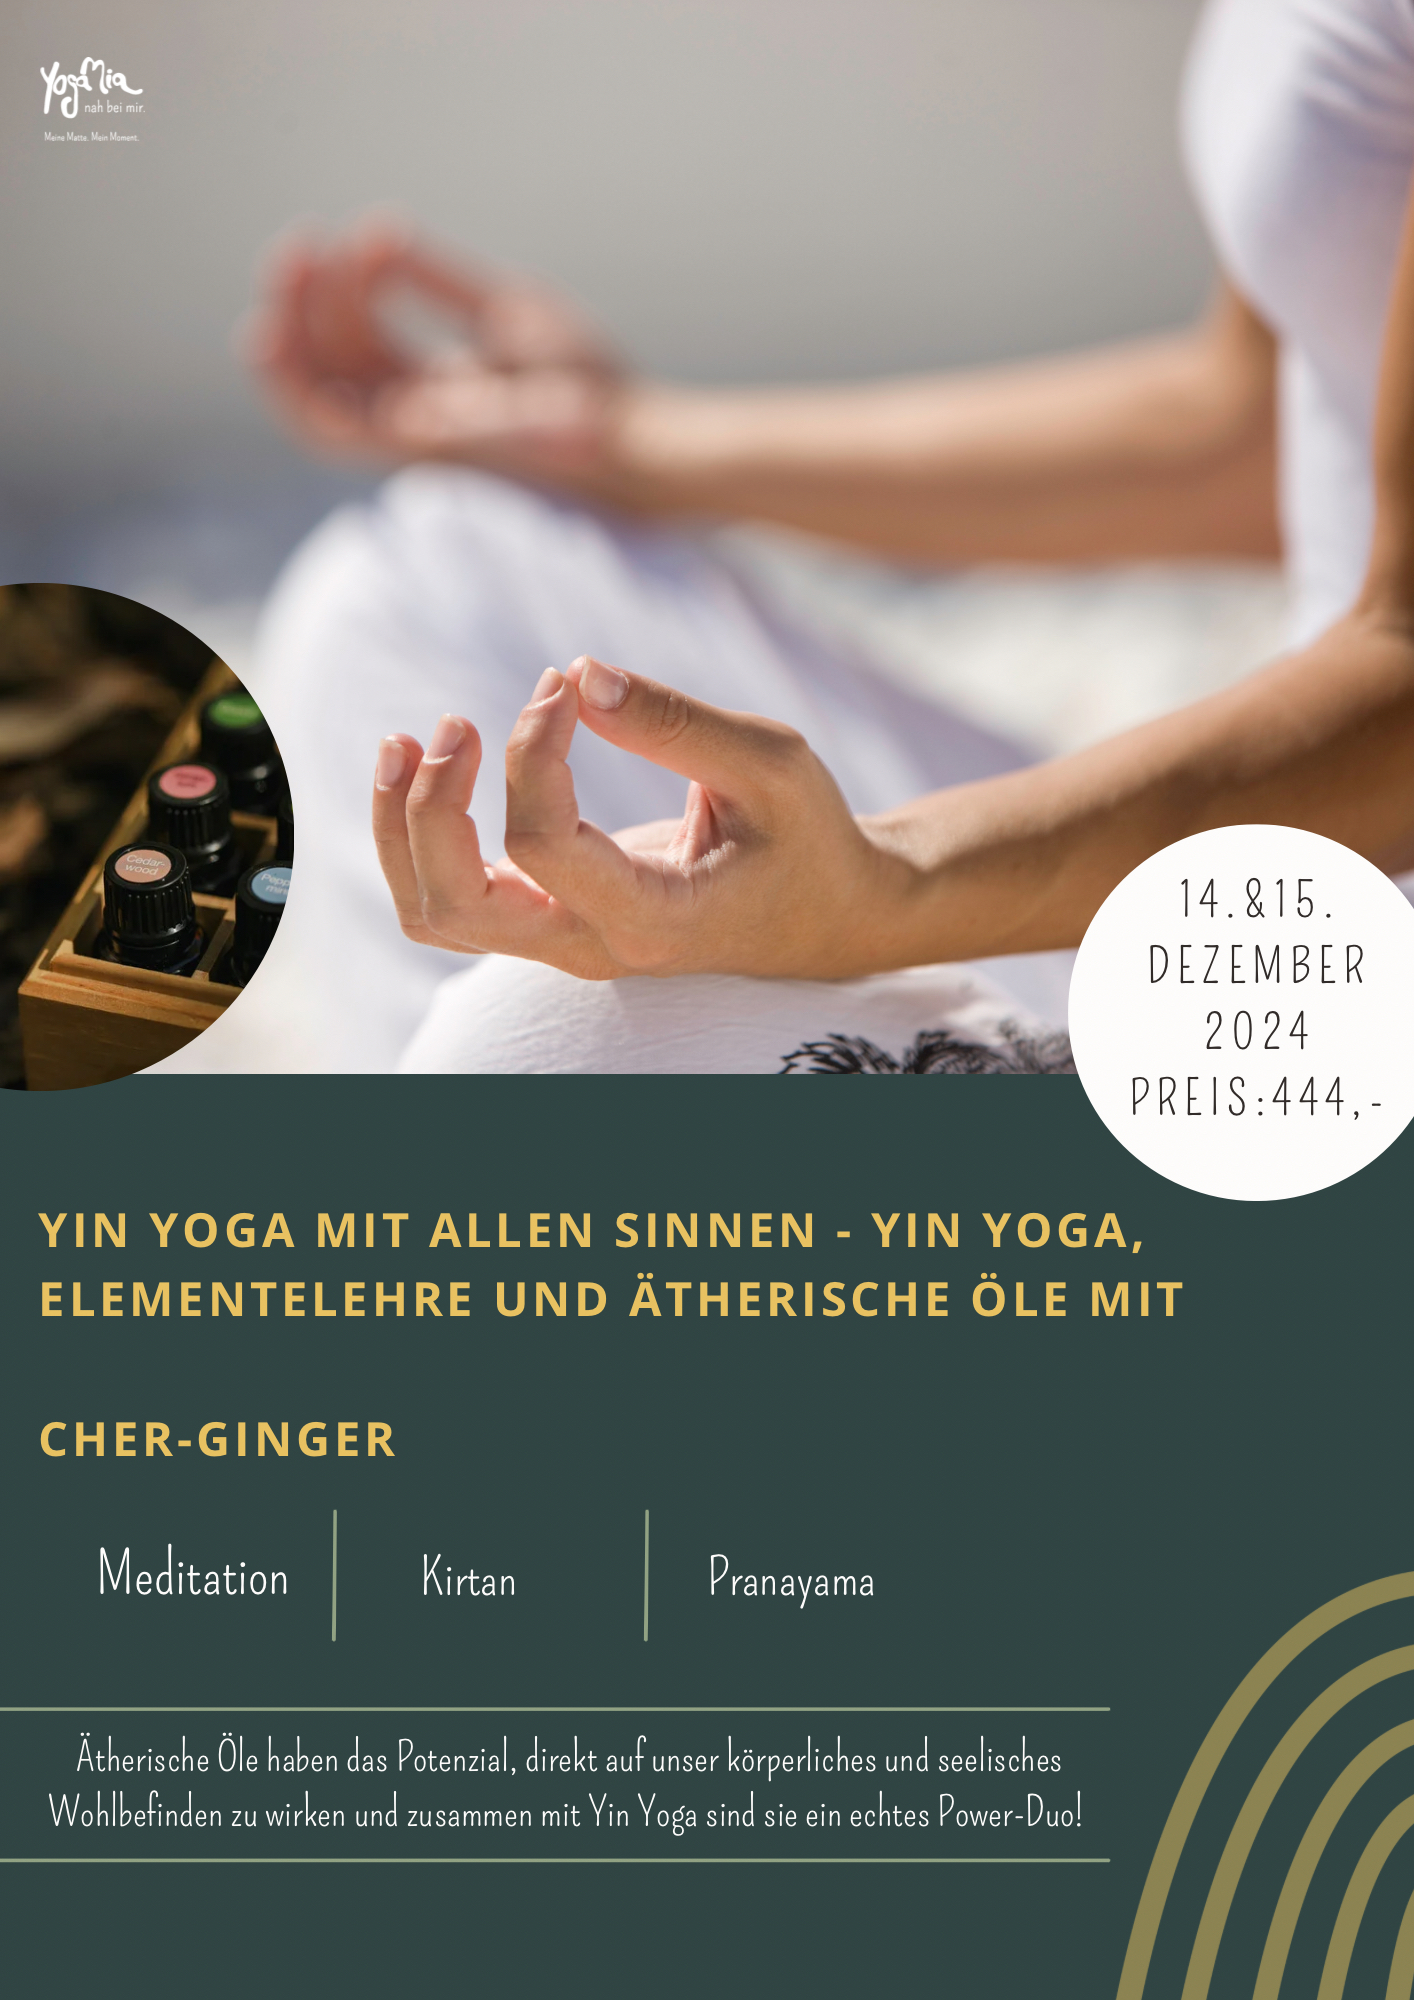 Yin Yoga mit allen Sinnen - Yin Yoga, Elementelehre und ätherische Öle mit Cher-Ginger